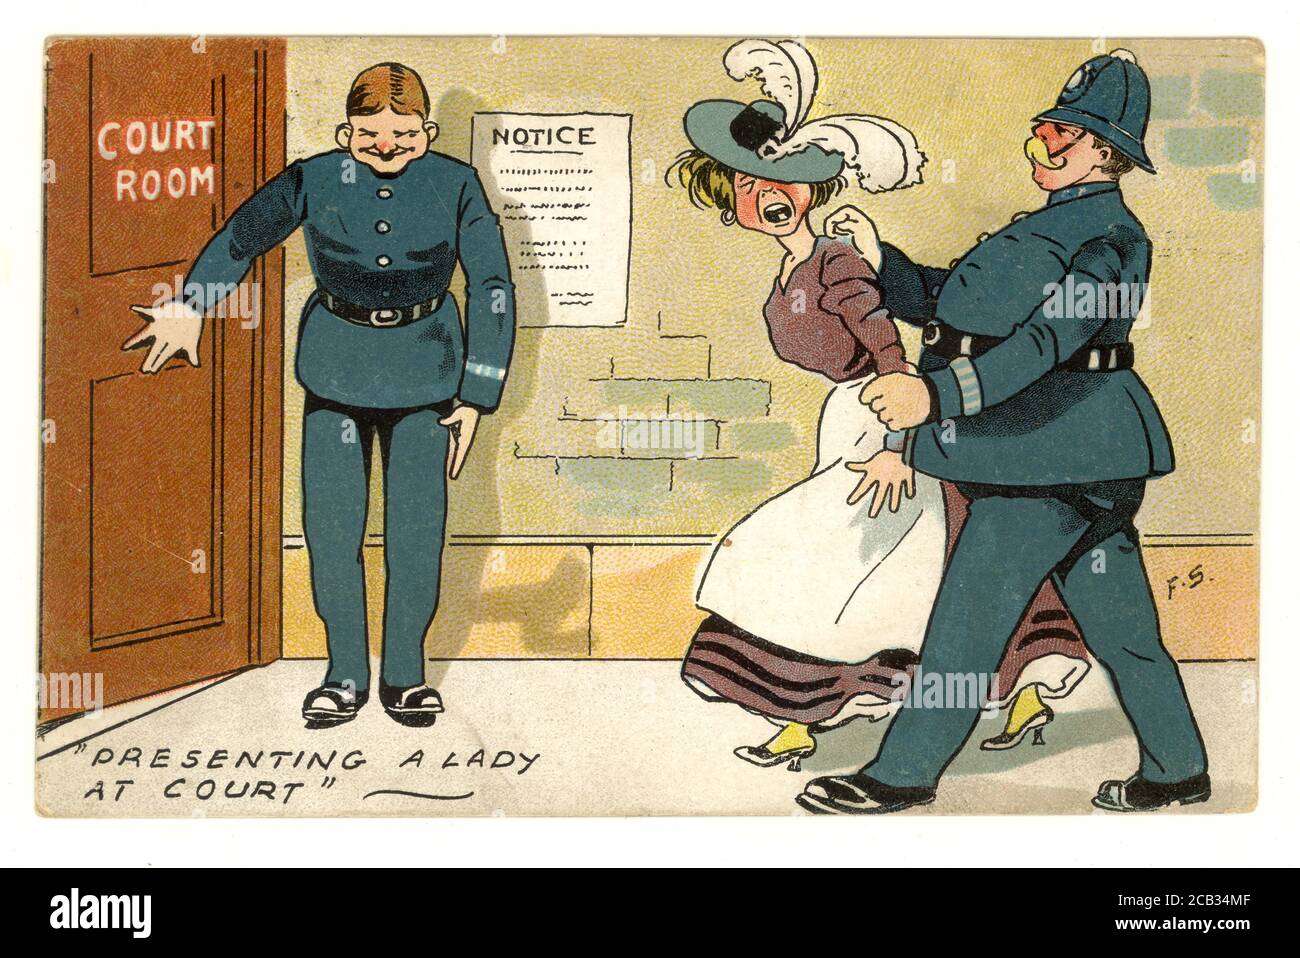 Carte postale originale du début des années 1900 d'une militante, une suffragette, emmenée devant les tribunaux par un policier, 'présentant une dame à la cour', publiée le 31 août 1908 R.-U. Banque D'Images